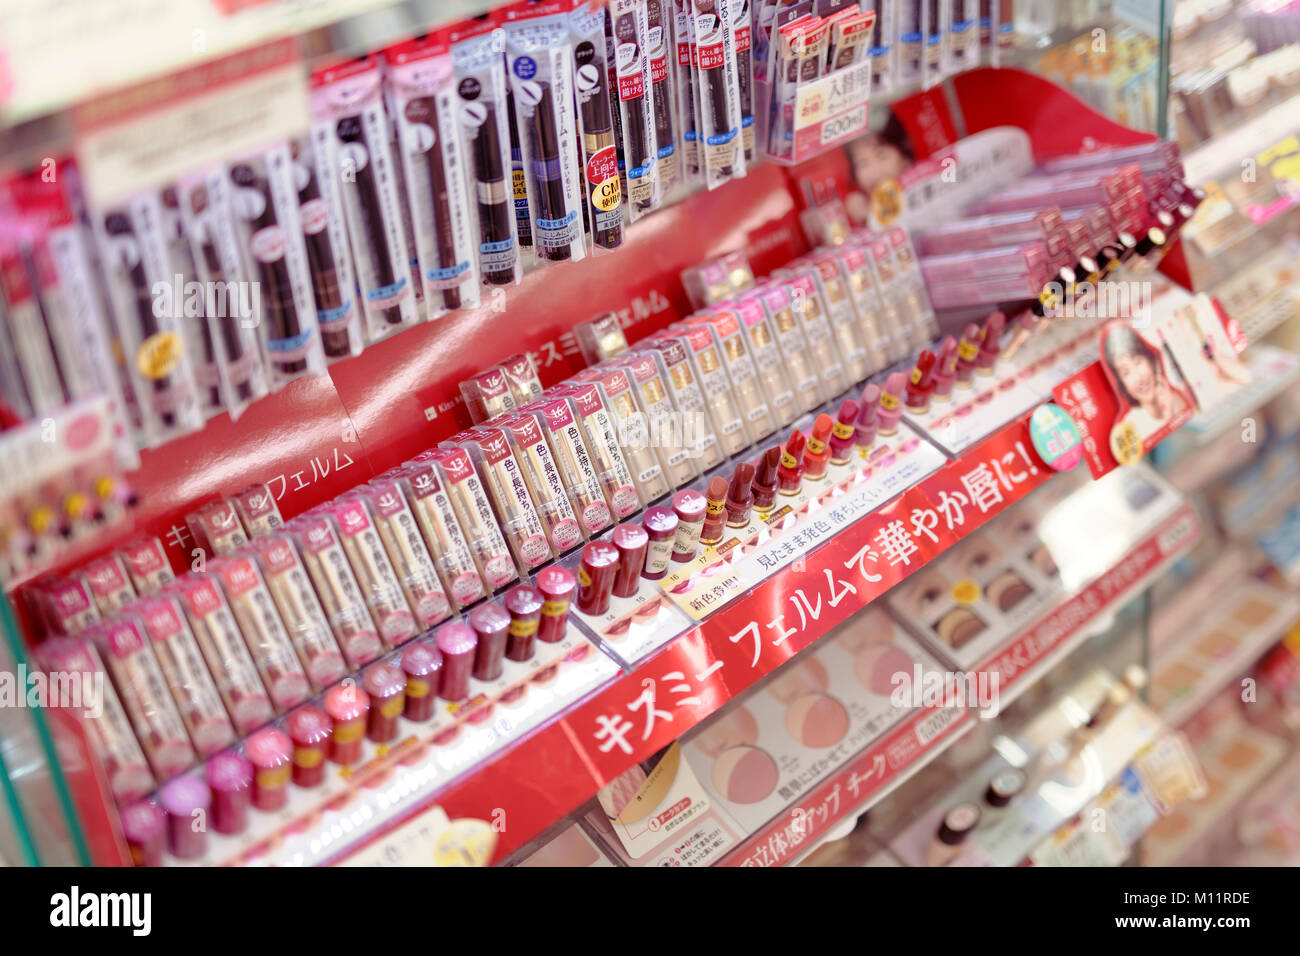 Sfumature di rosso e rosa rossetti in un giapponese di trucco e prodotti di bellezza store, rossetto tester sul make-up store display, Kyoto, Giappone 2017 Foto Stock